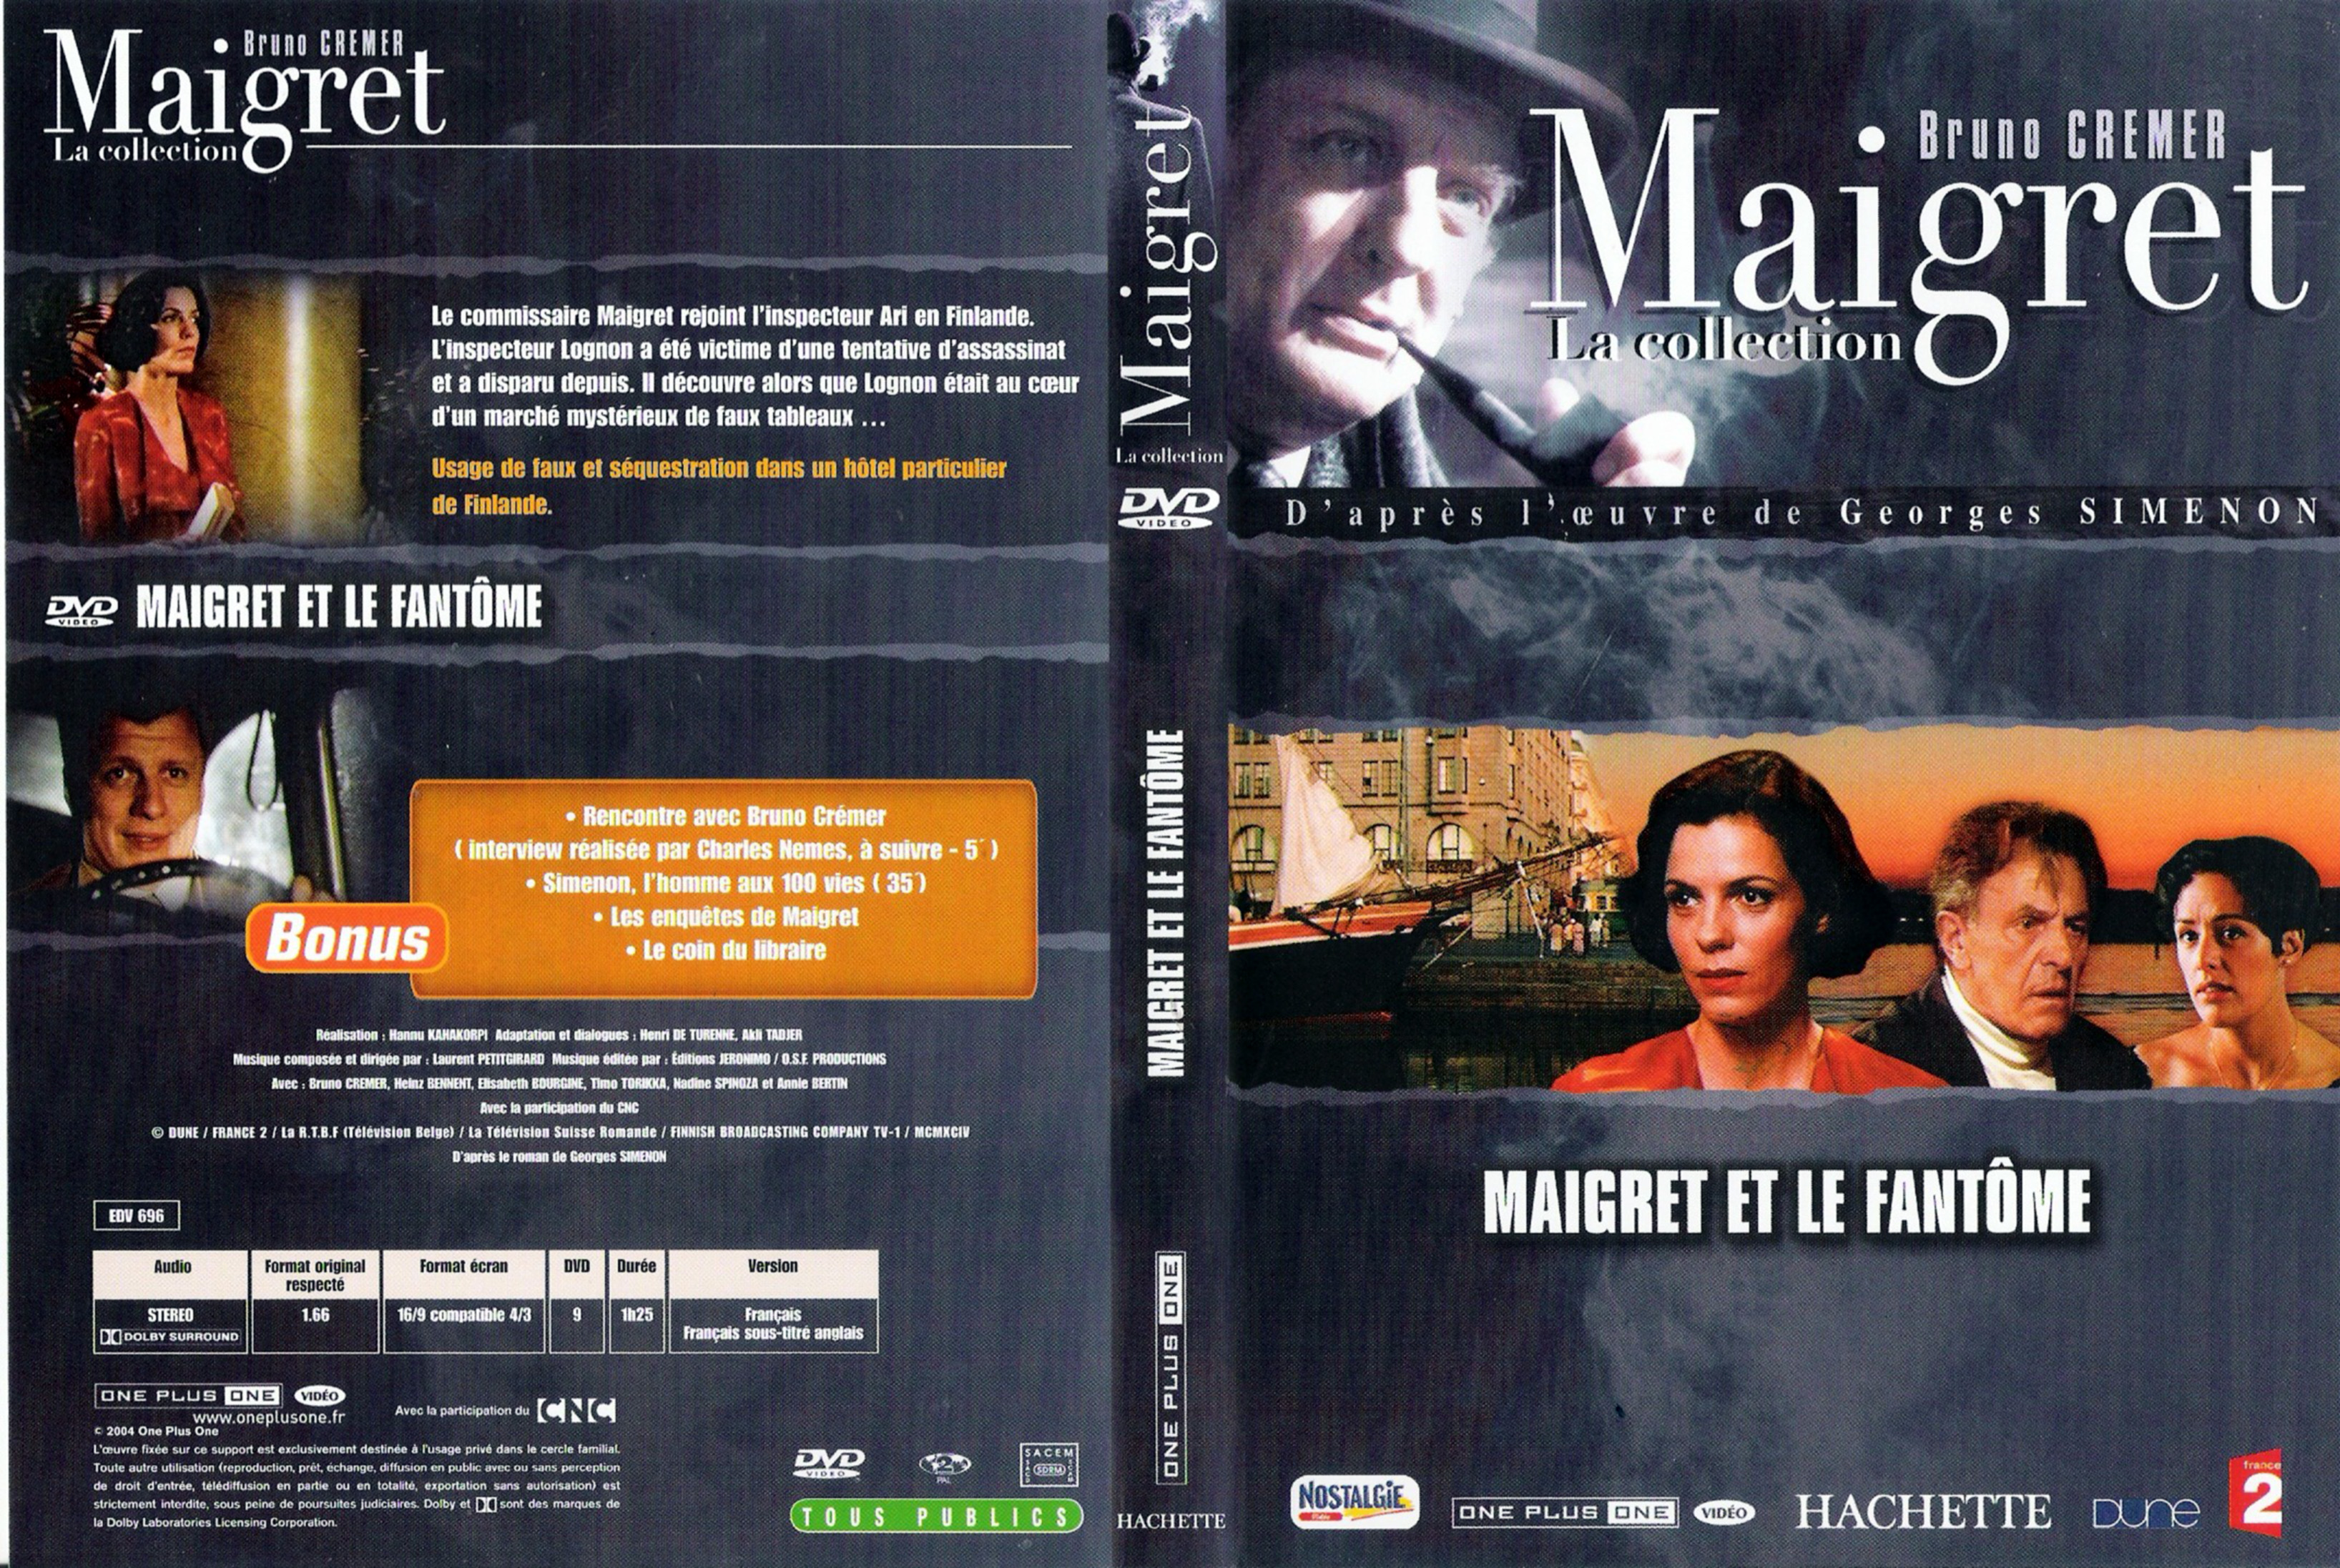 Jaquette DVD Maigret et le fantome (Bruno Cremer)